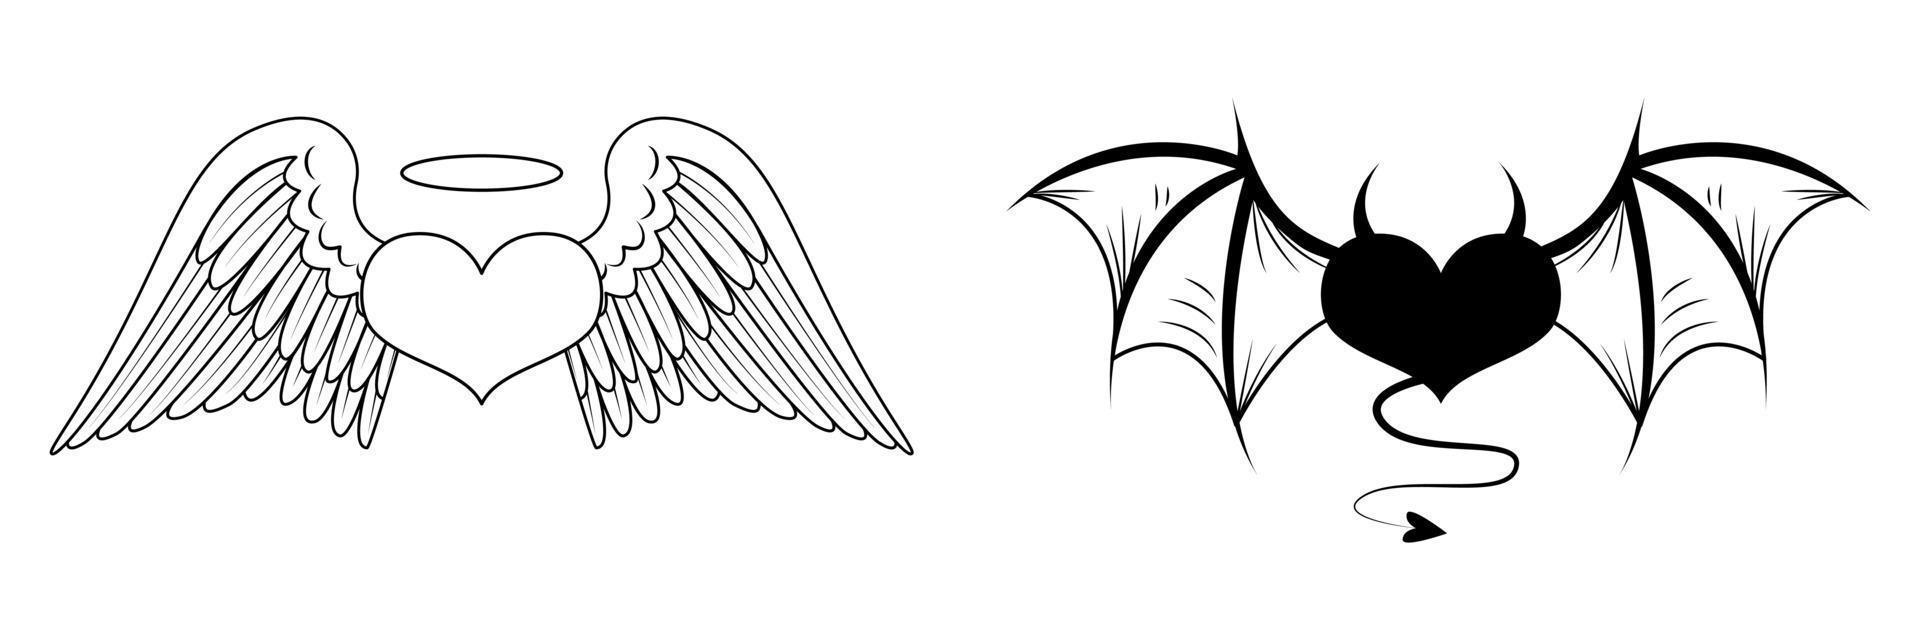 dois corações com asas angelicais e demoníacas. coração de anjo com halo. coração do diabo com chifres e cauda. esboço para uma tatuagem. ilustração vetorial isolada no fundo branco vetor